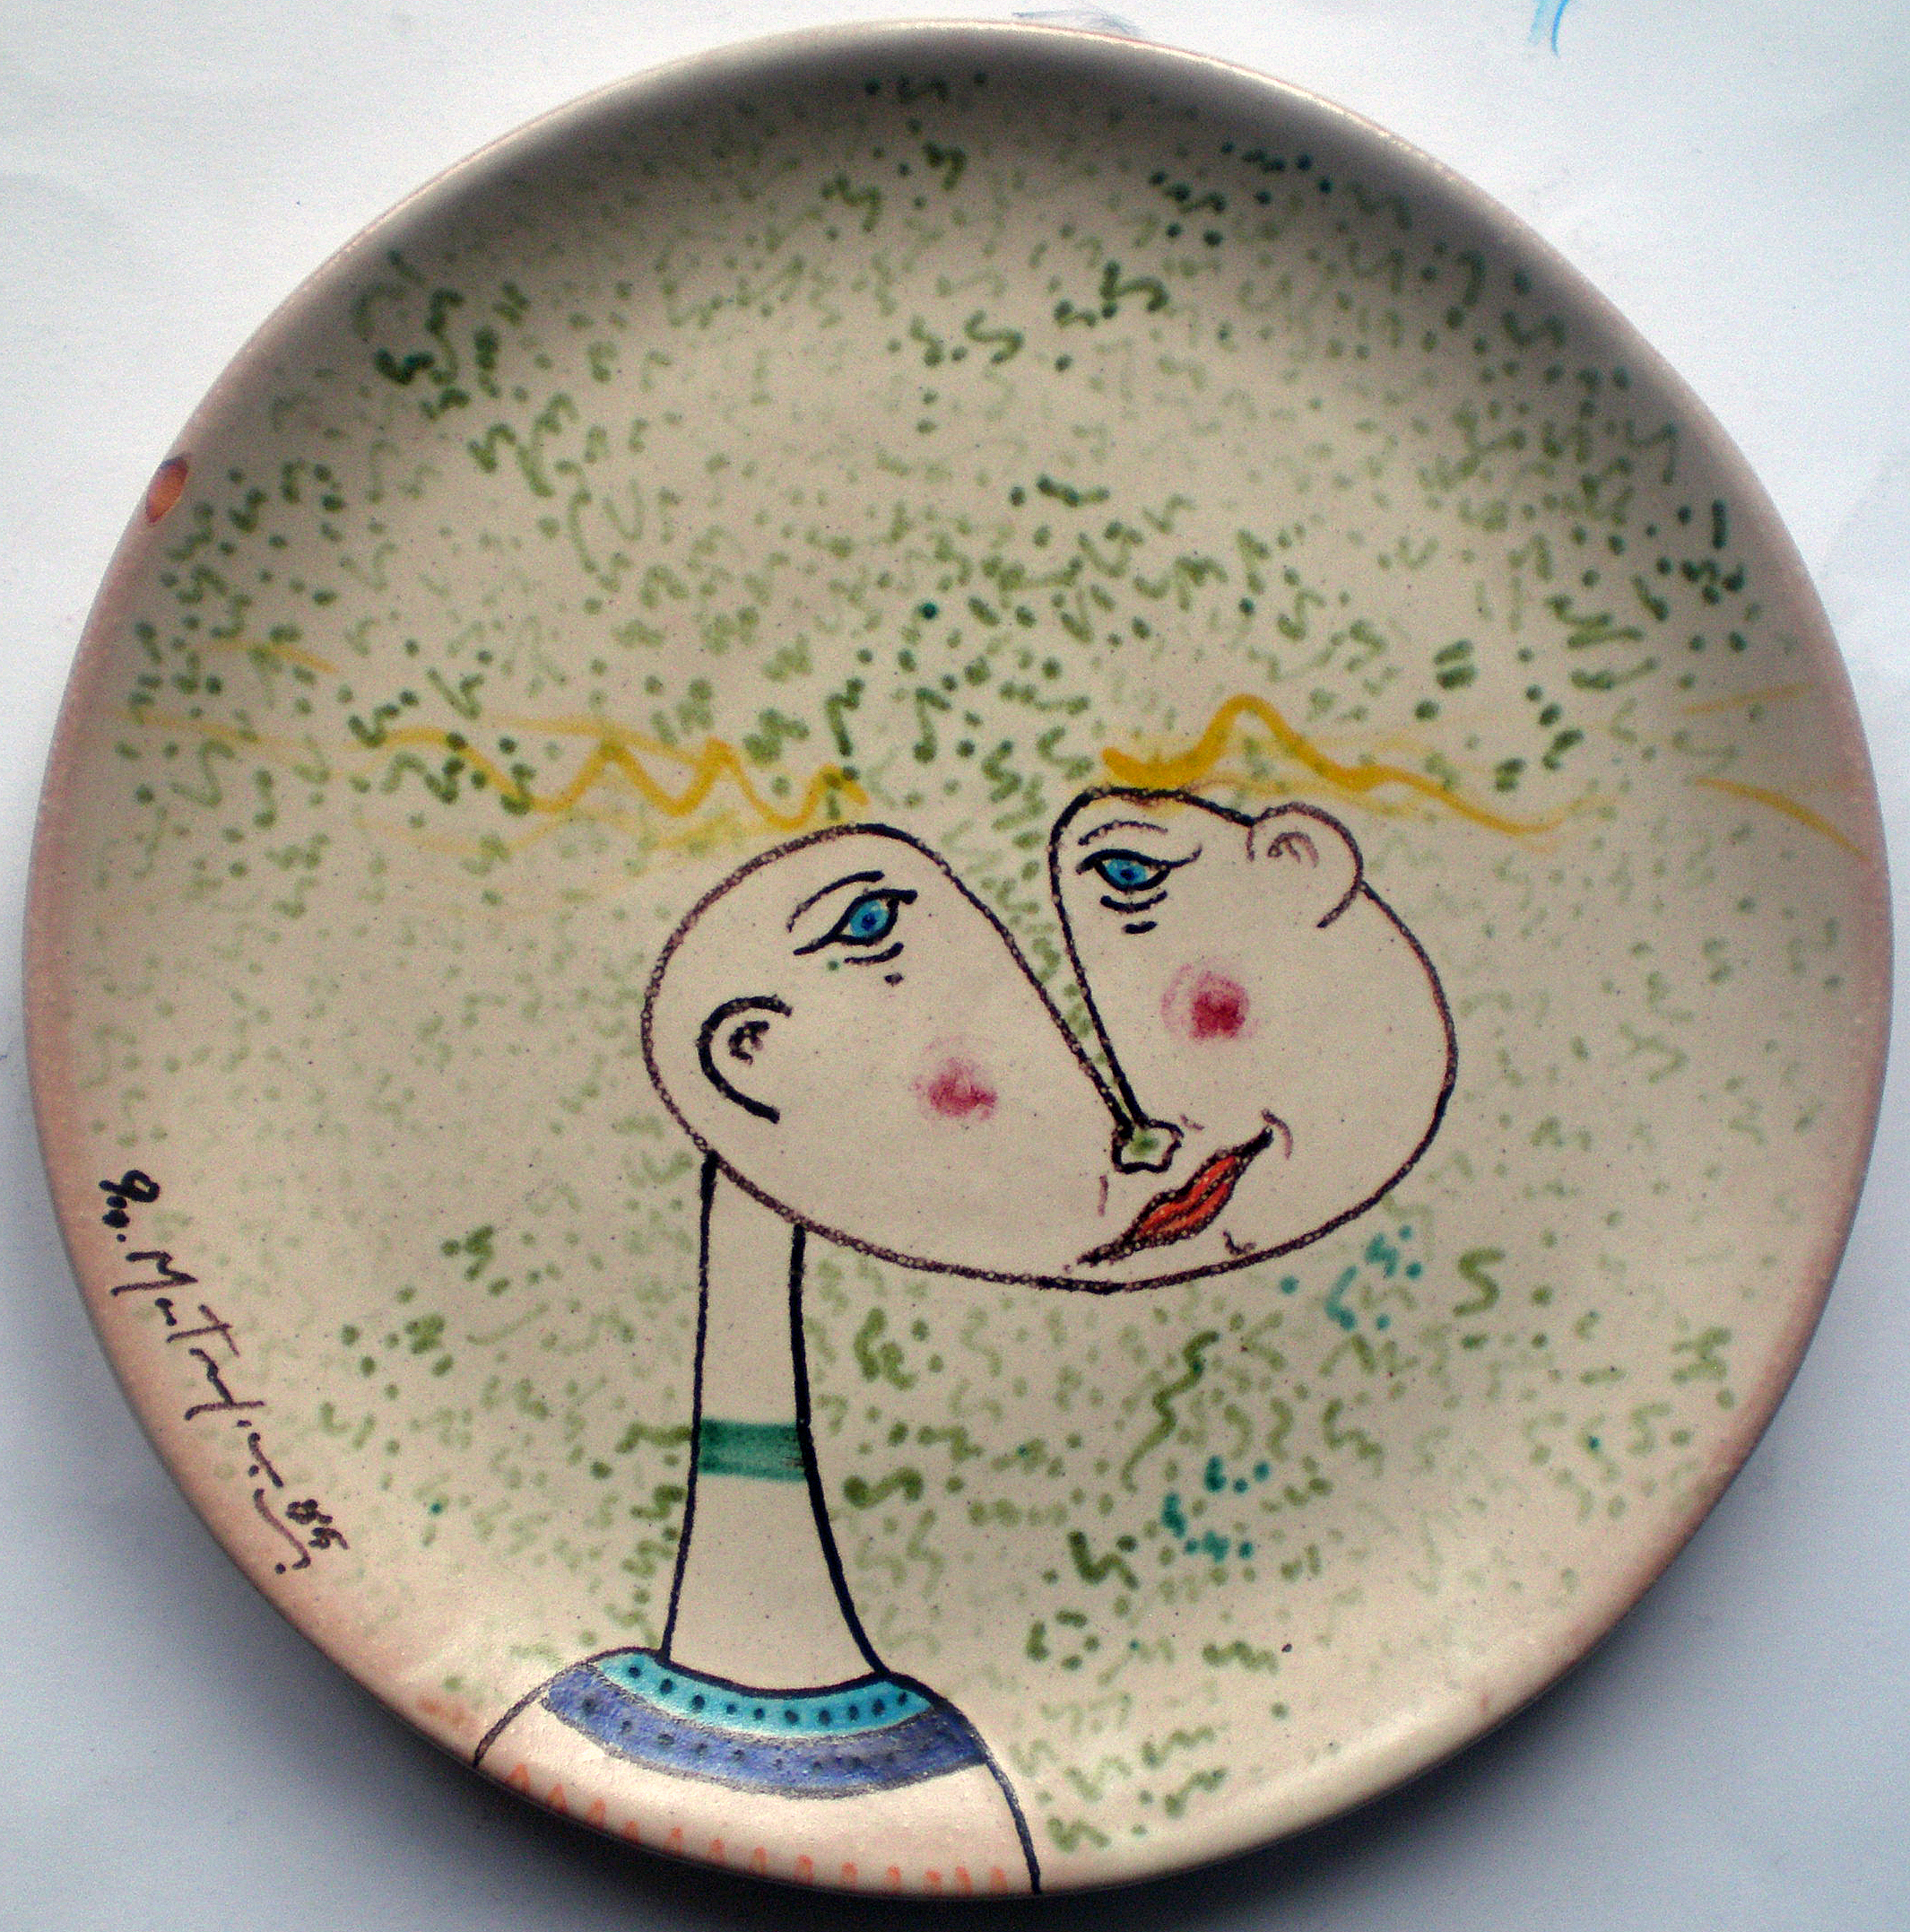 Volto filettato, 1985 diametro 27 cm, ceramica artistica contemporanea (maiolica), Pio Mastrogiacomo, Acerno (SA).